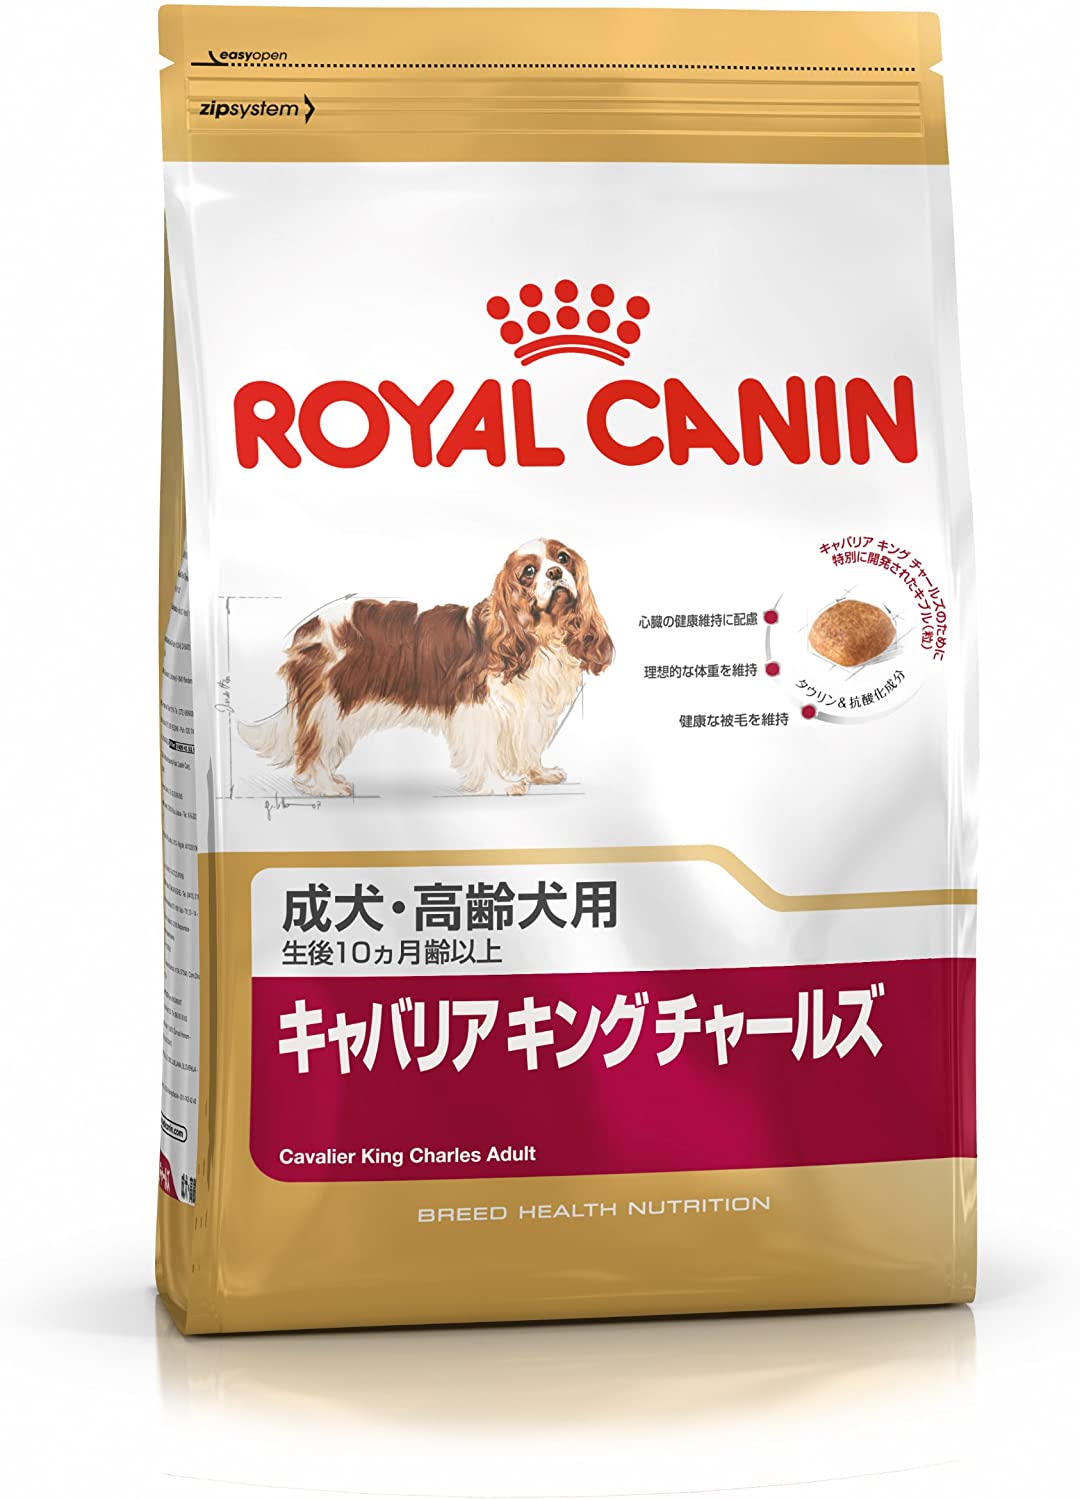  Royal Canin Comida para perros Cavalier King Charles Adult 1.5 Kg 